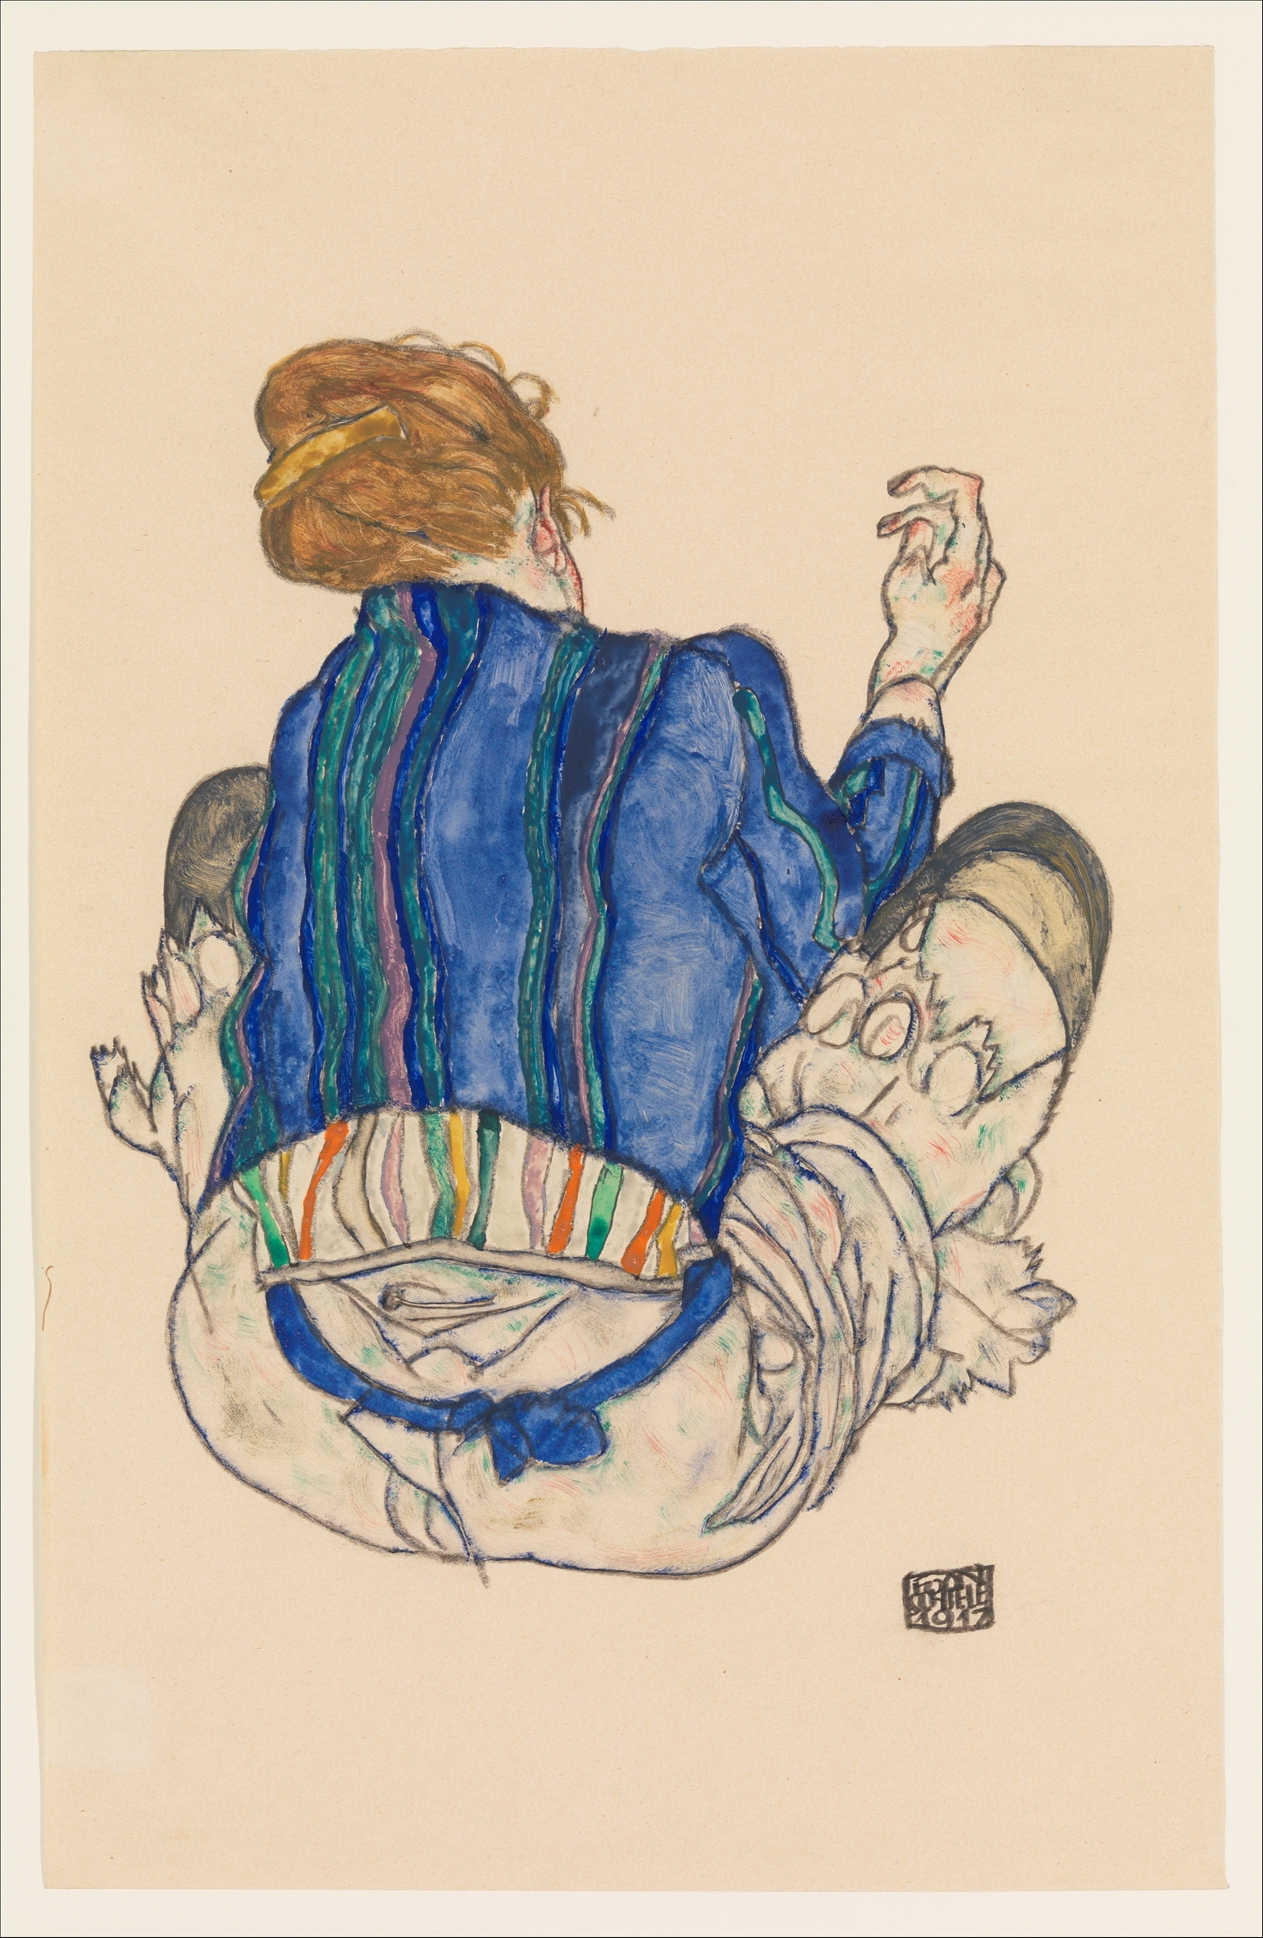 Ülő nő, hátsó nézet by Egon Schiele - 1917 - 46.4 x 29.8 cm 